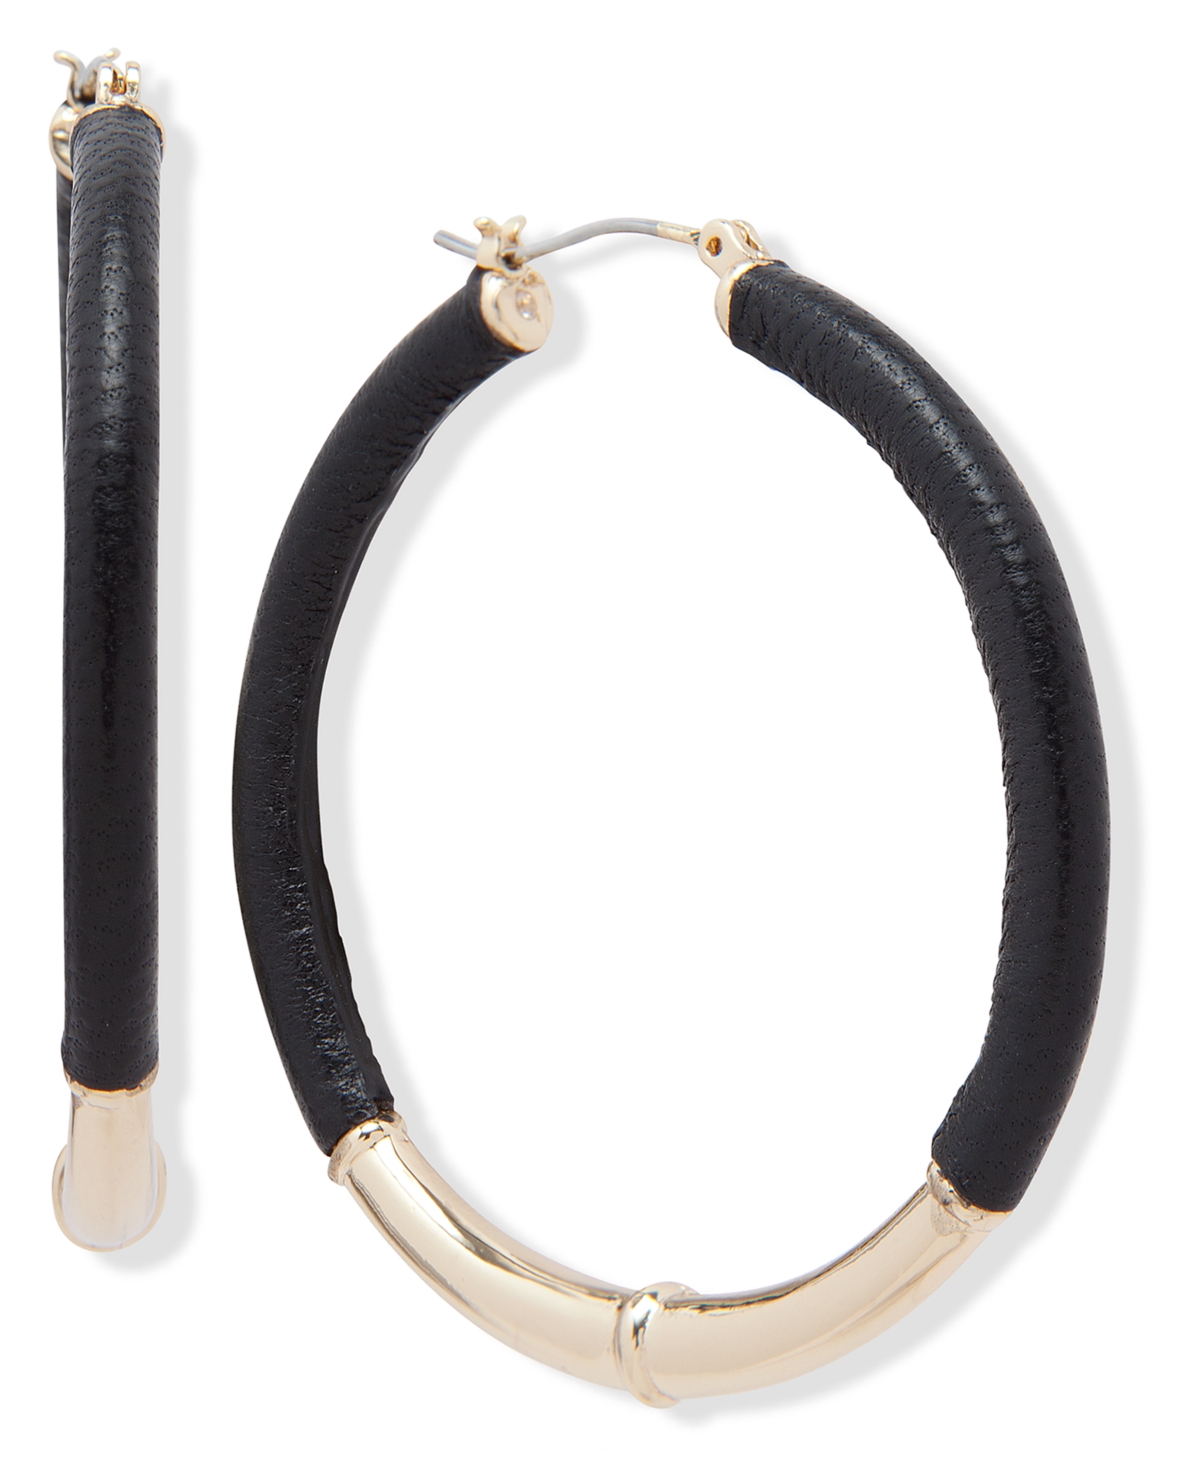 Medium Leather Hoop Earrings, 2" - Black